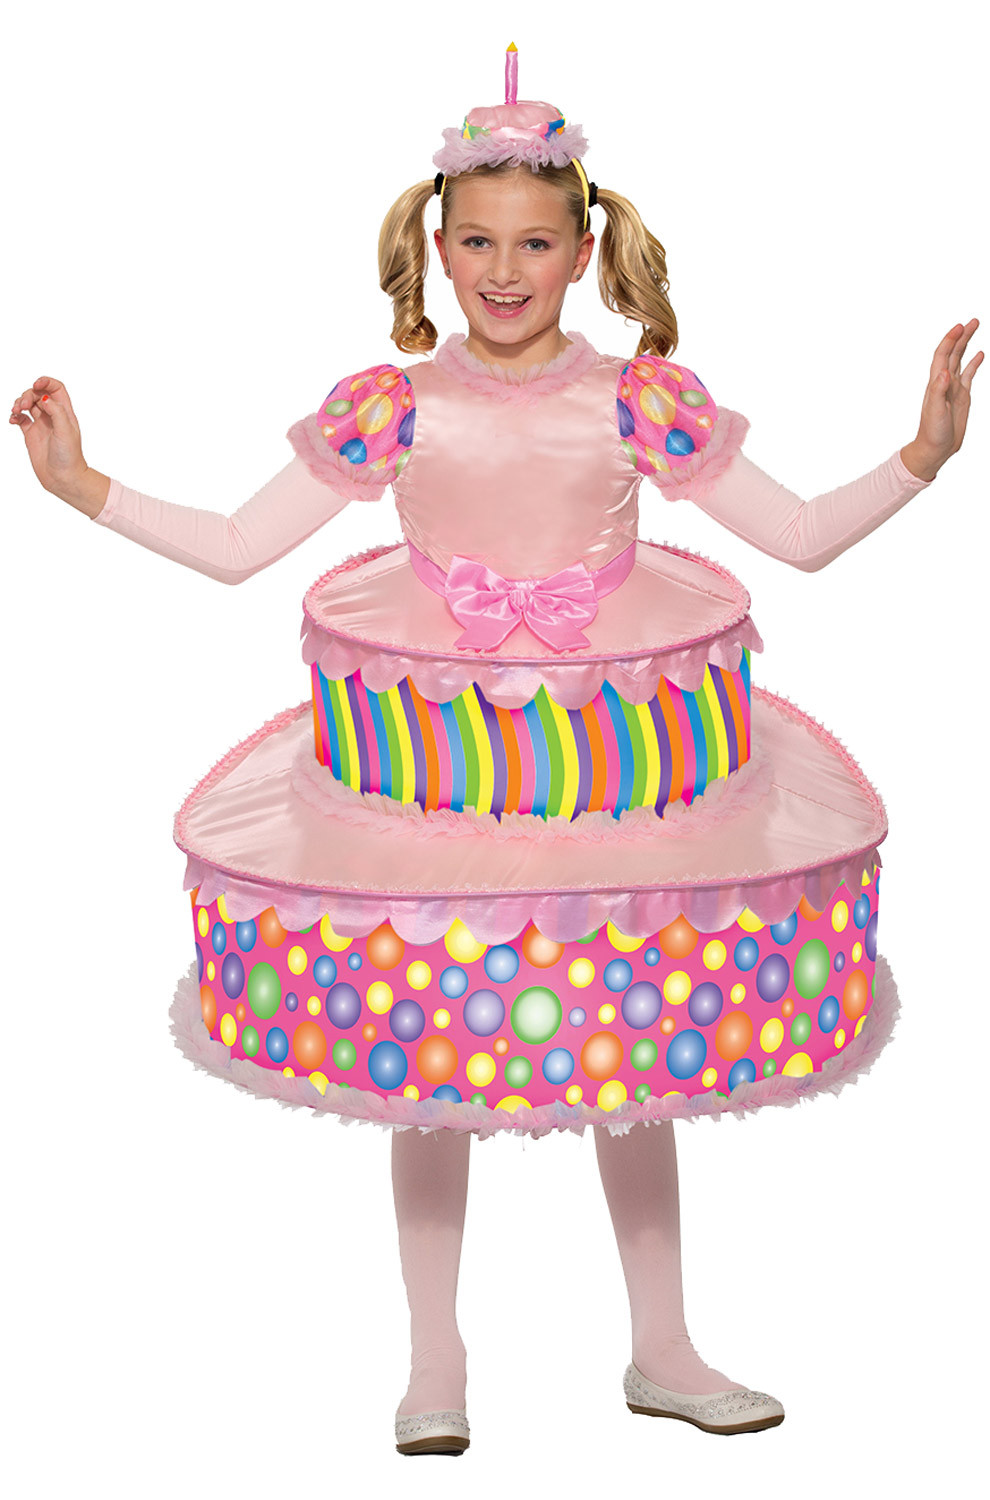 Birthday Cake Halloween Costume
 Birthday Cake Child Costume PureCostumes